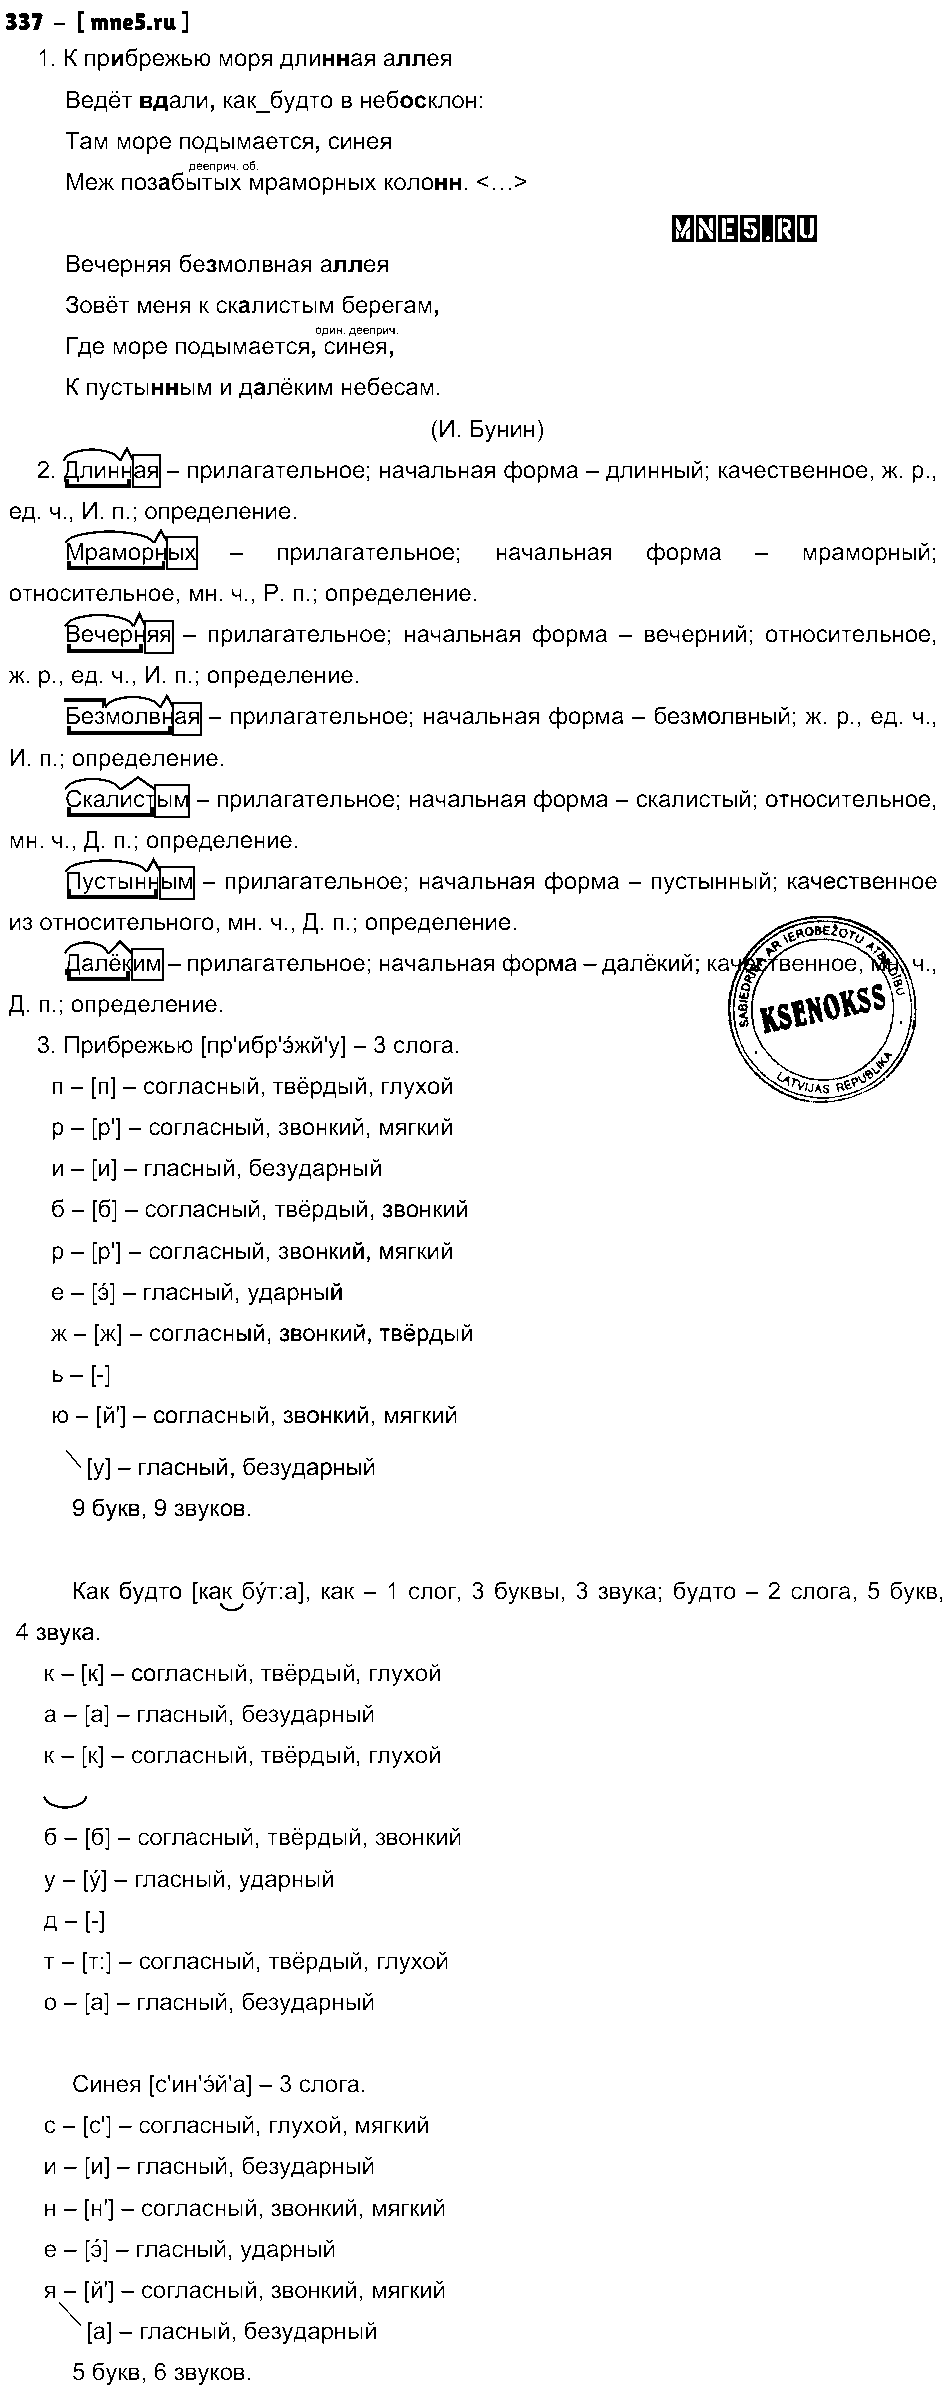 ГДЗ Русский язык 8 класс - 337